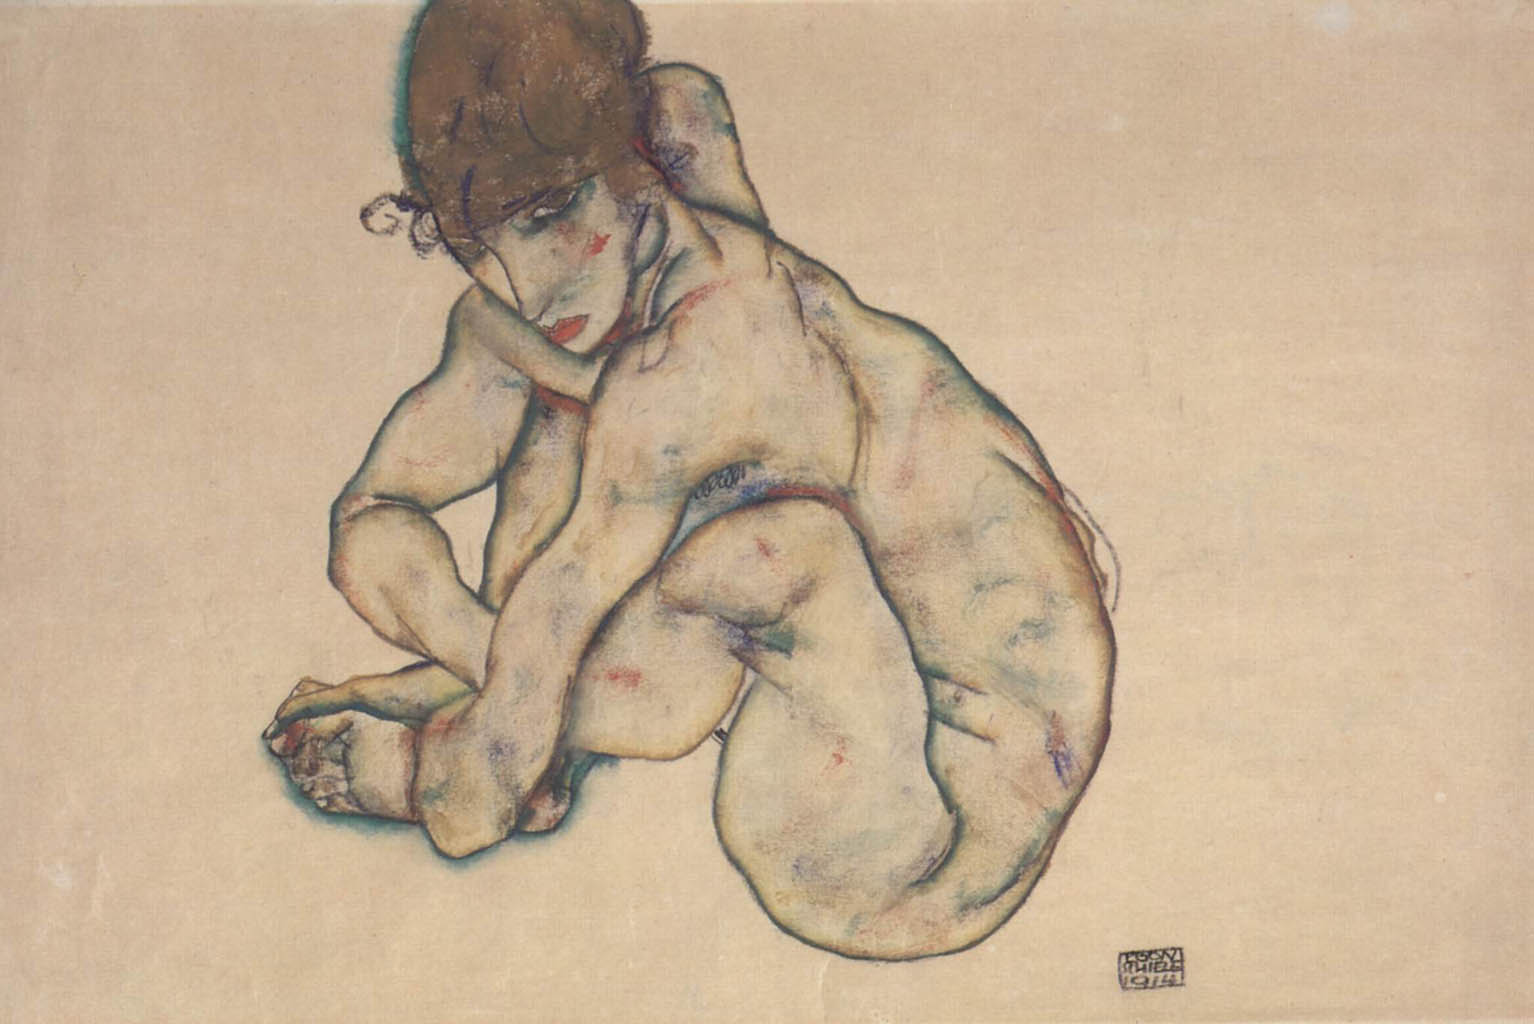 Эгон Шиле (Egon Schiele), “Sitzender weiblicher Akt“